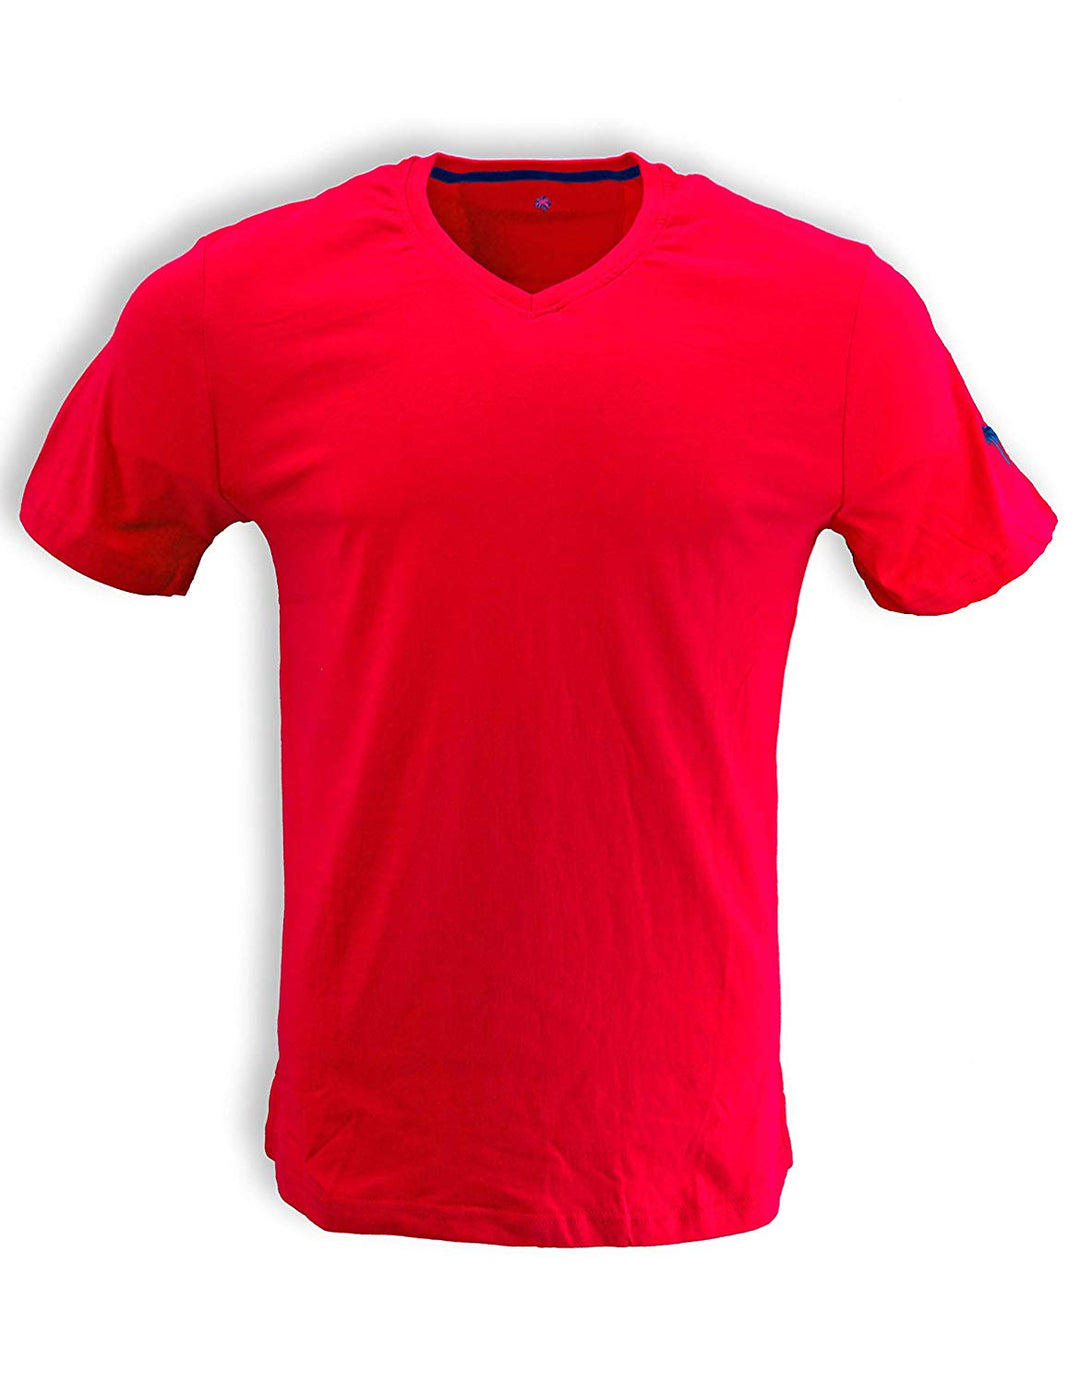 Bermuda Styles V-Neck T-Shirt